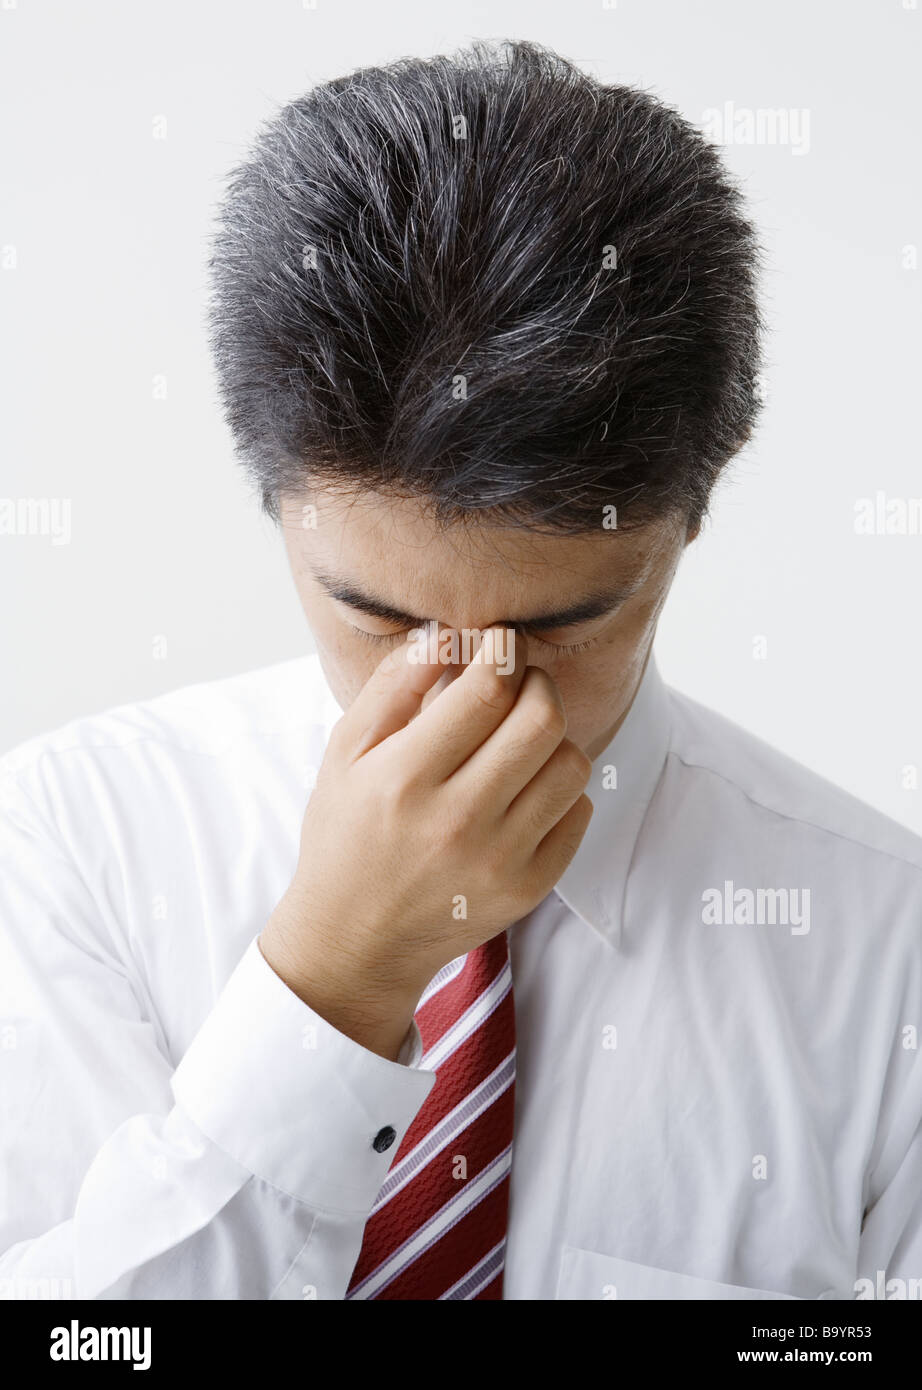 A man dabbing his eyes Stock Photo